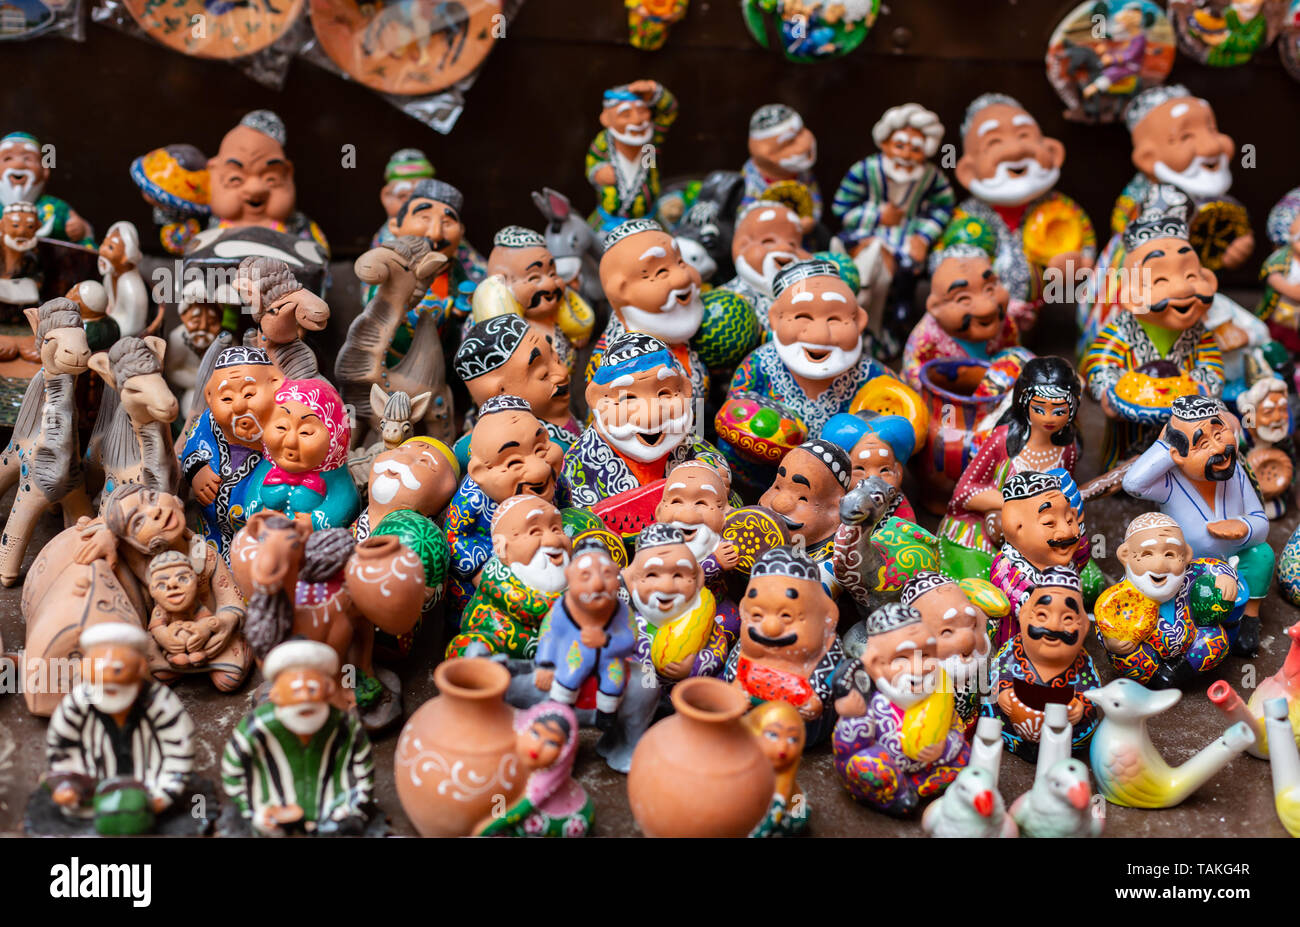 Der Showcase mit Usbekischen Souvenirs, Keramikfiguren von Menschen. Stockfoto